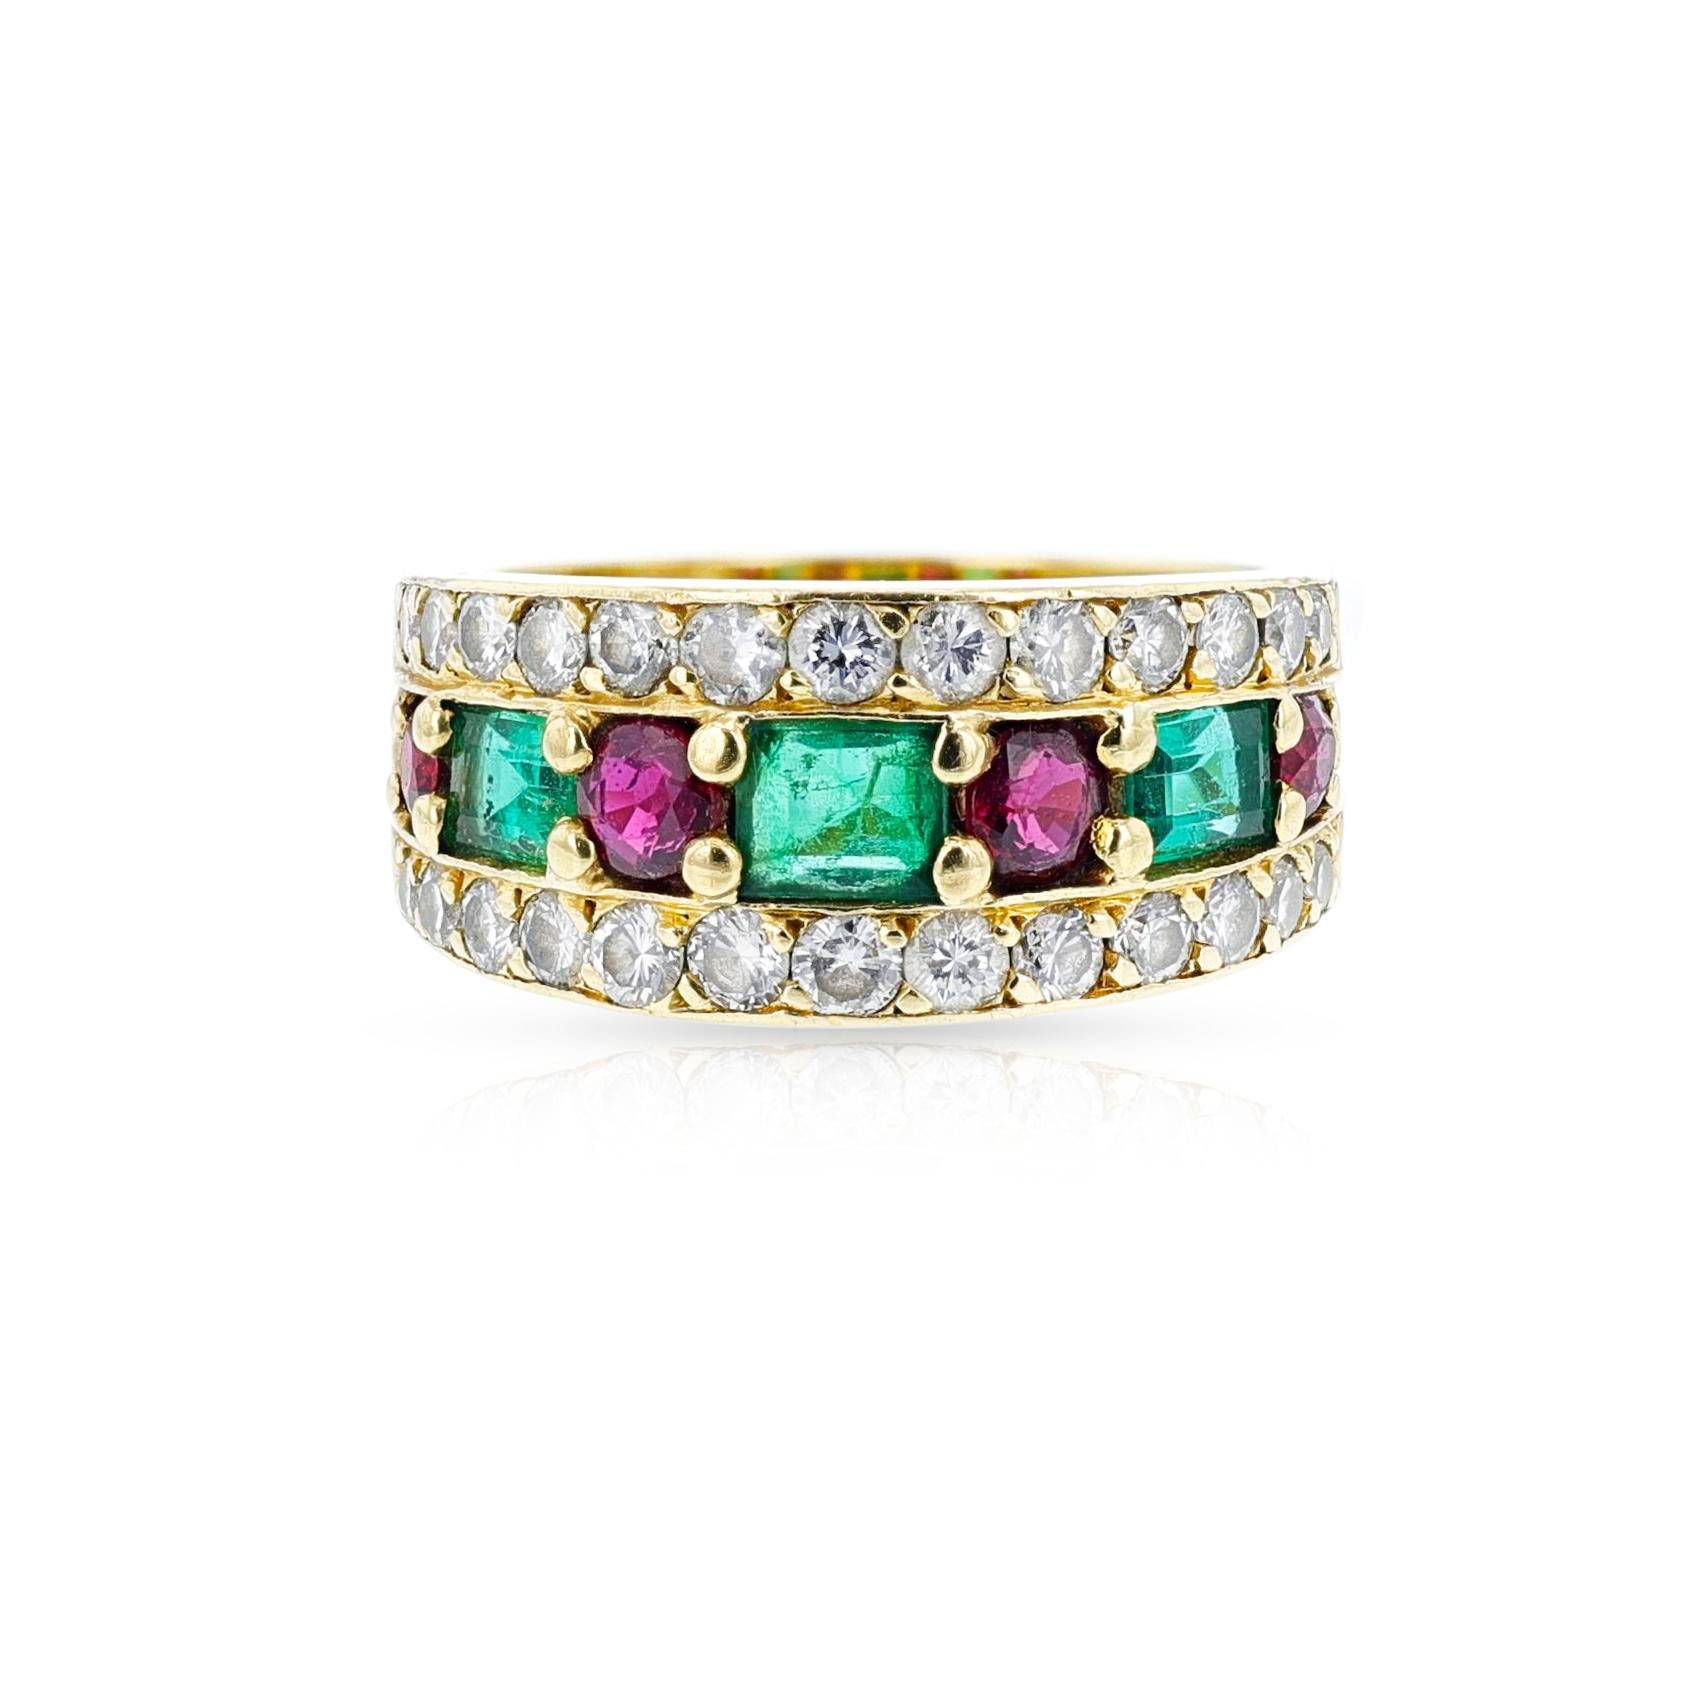 emerald ring van cleef